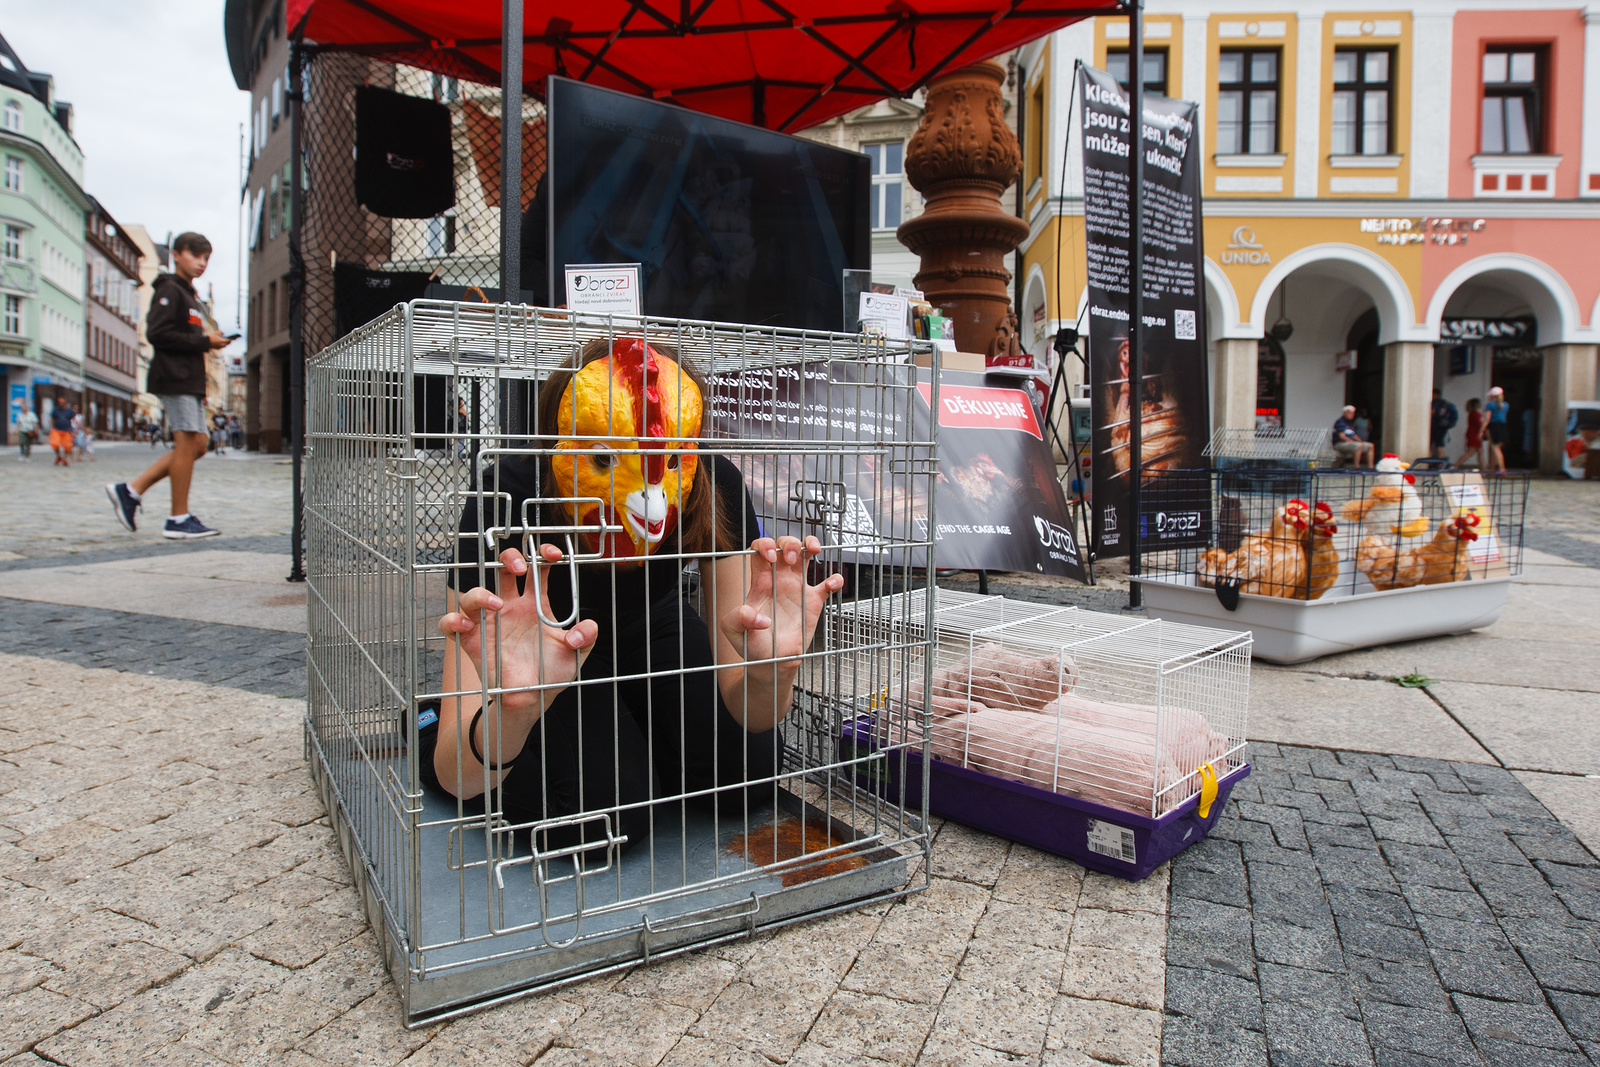 FOTO: V kleci. Liberecké náměstí se proměnilo v drůbežárnu plnou utrpení -  Českolipský deník